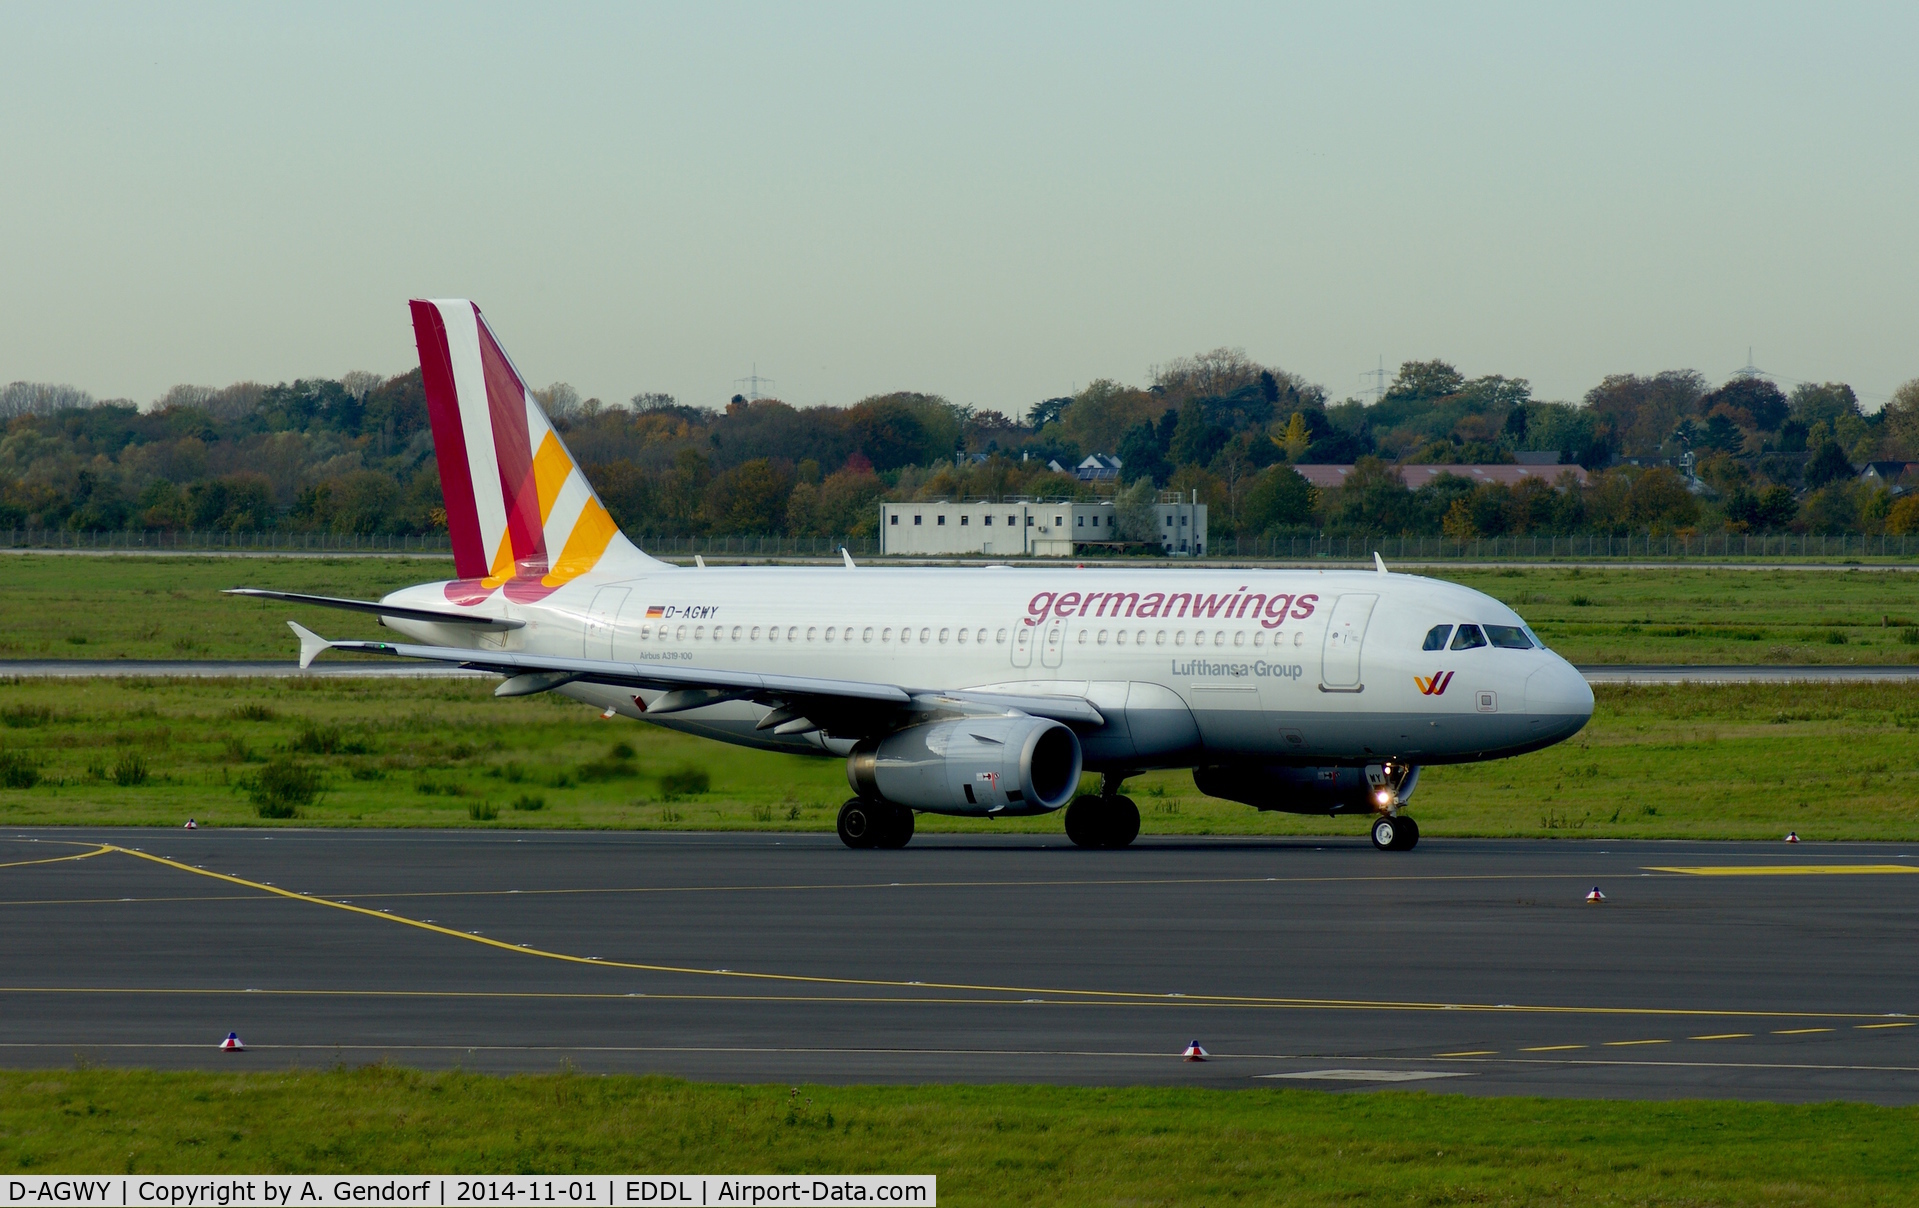 D-AGWY, 2013 Airbus A319-132 C/N 5941, Germanwings, is here taxiing at Düsseldorf Int'l(EDDL)